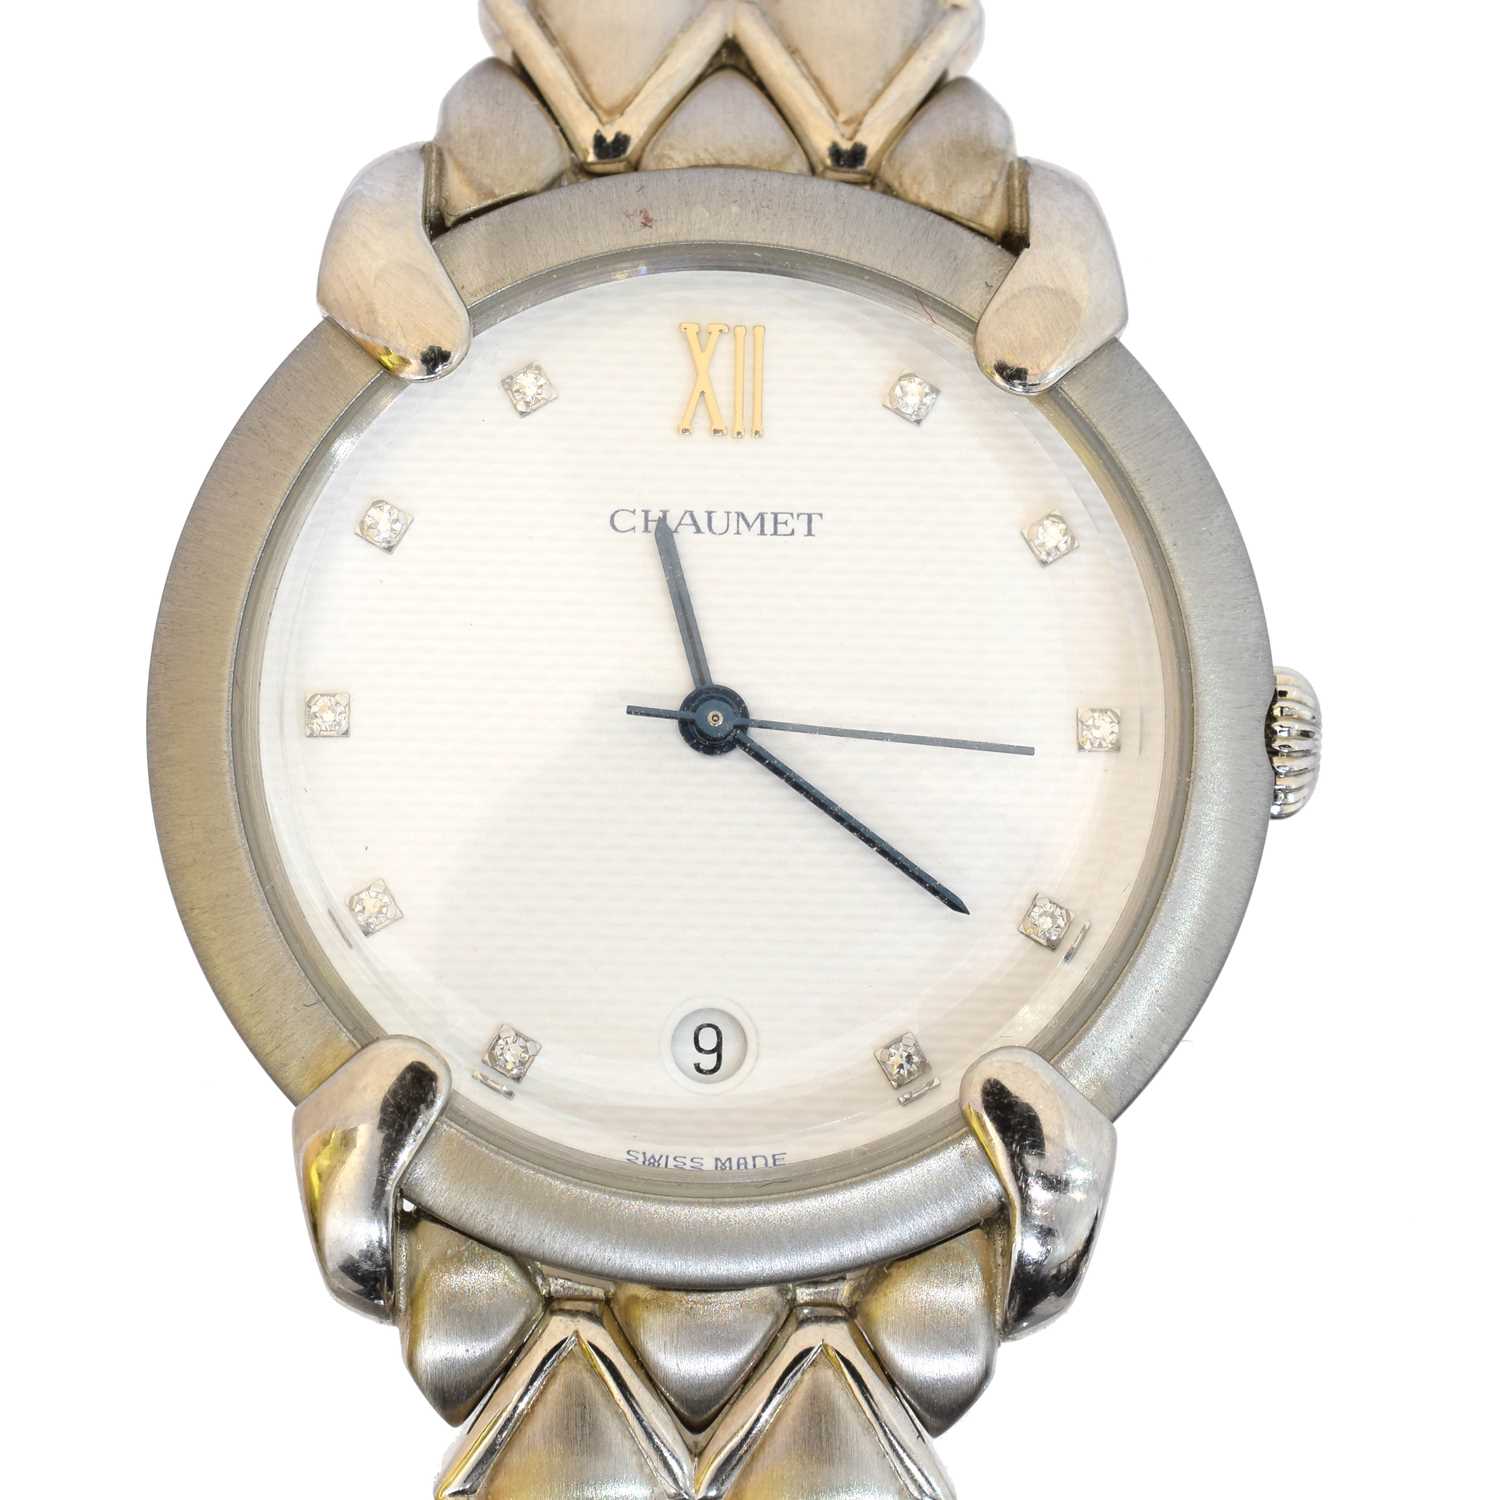 Lot A Chaumet stainless steel quartz calendar 'Elysées' wristwatch